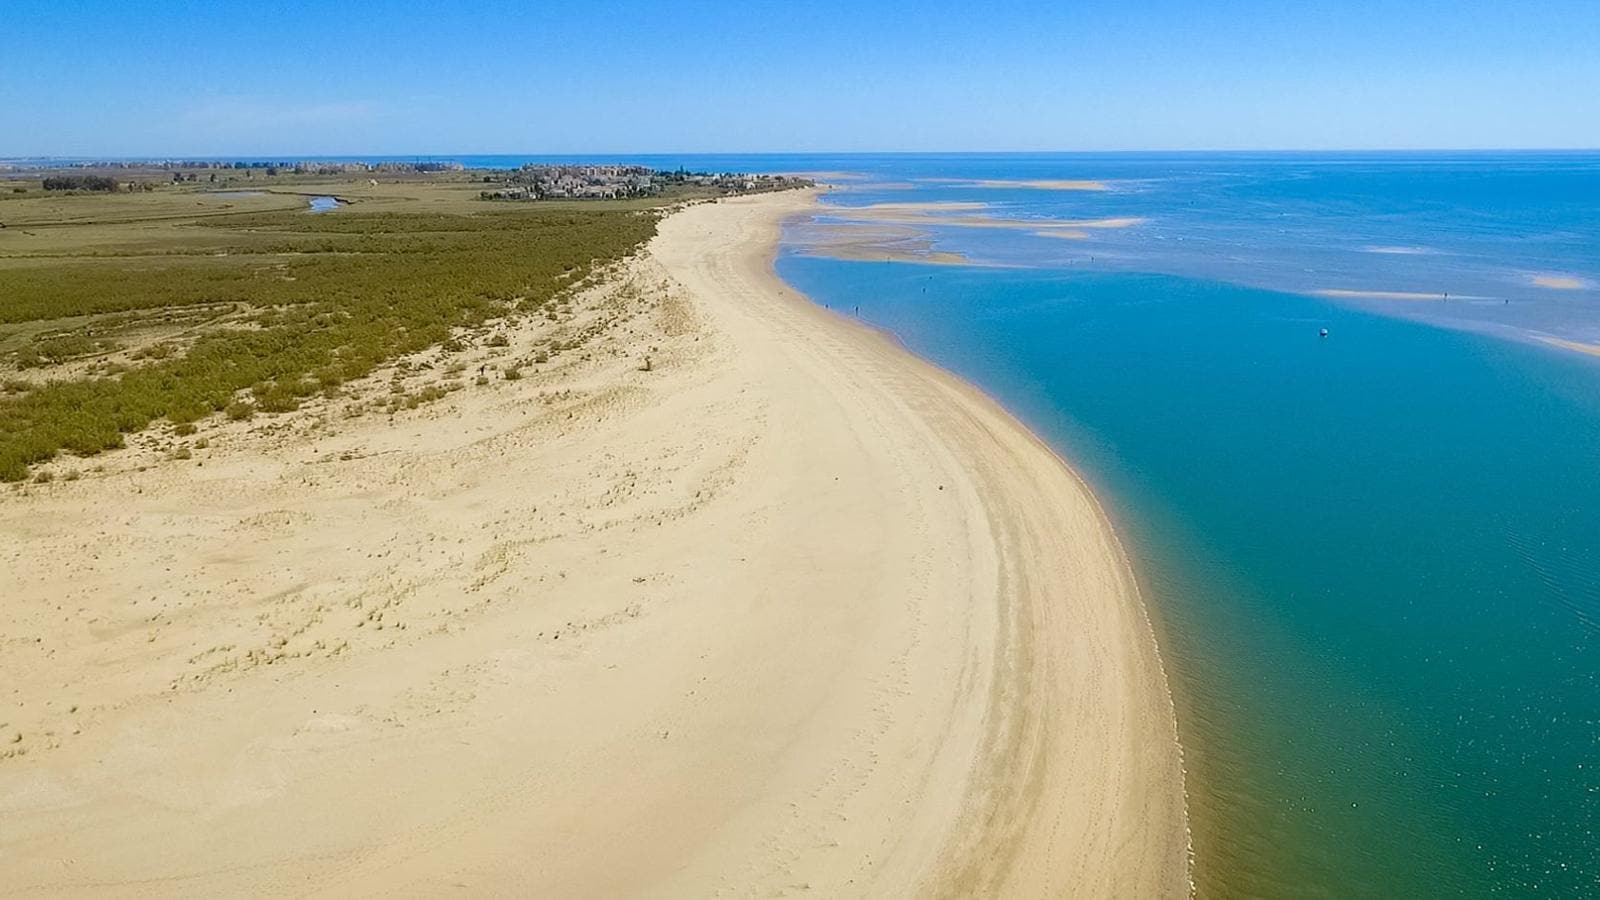 Las 20 playas más bonitas e impresionantes de España